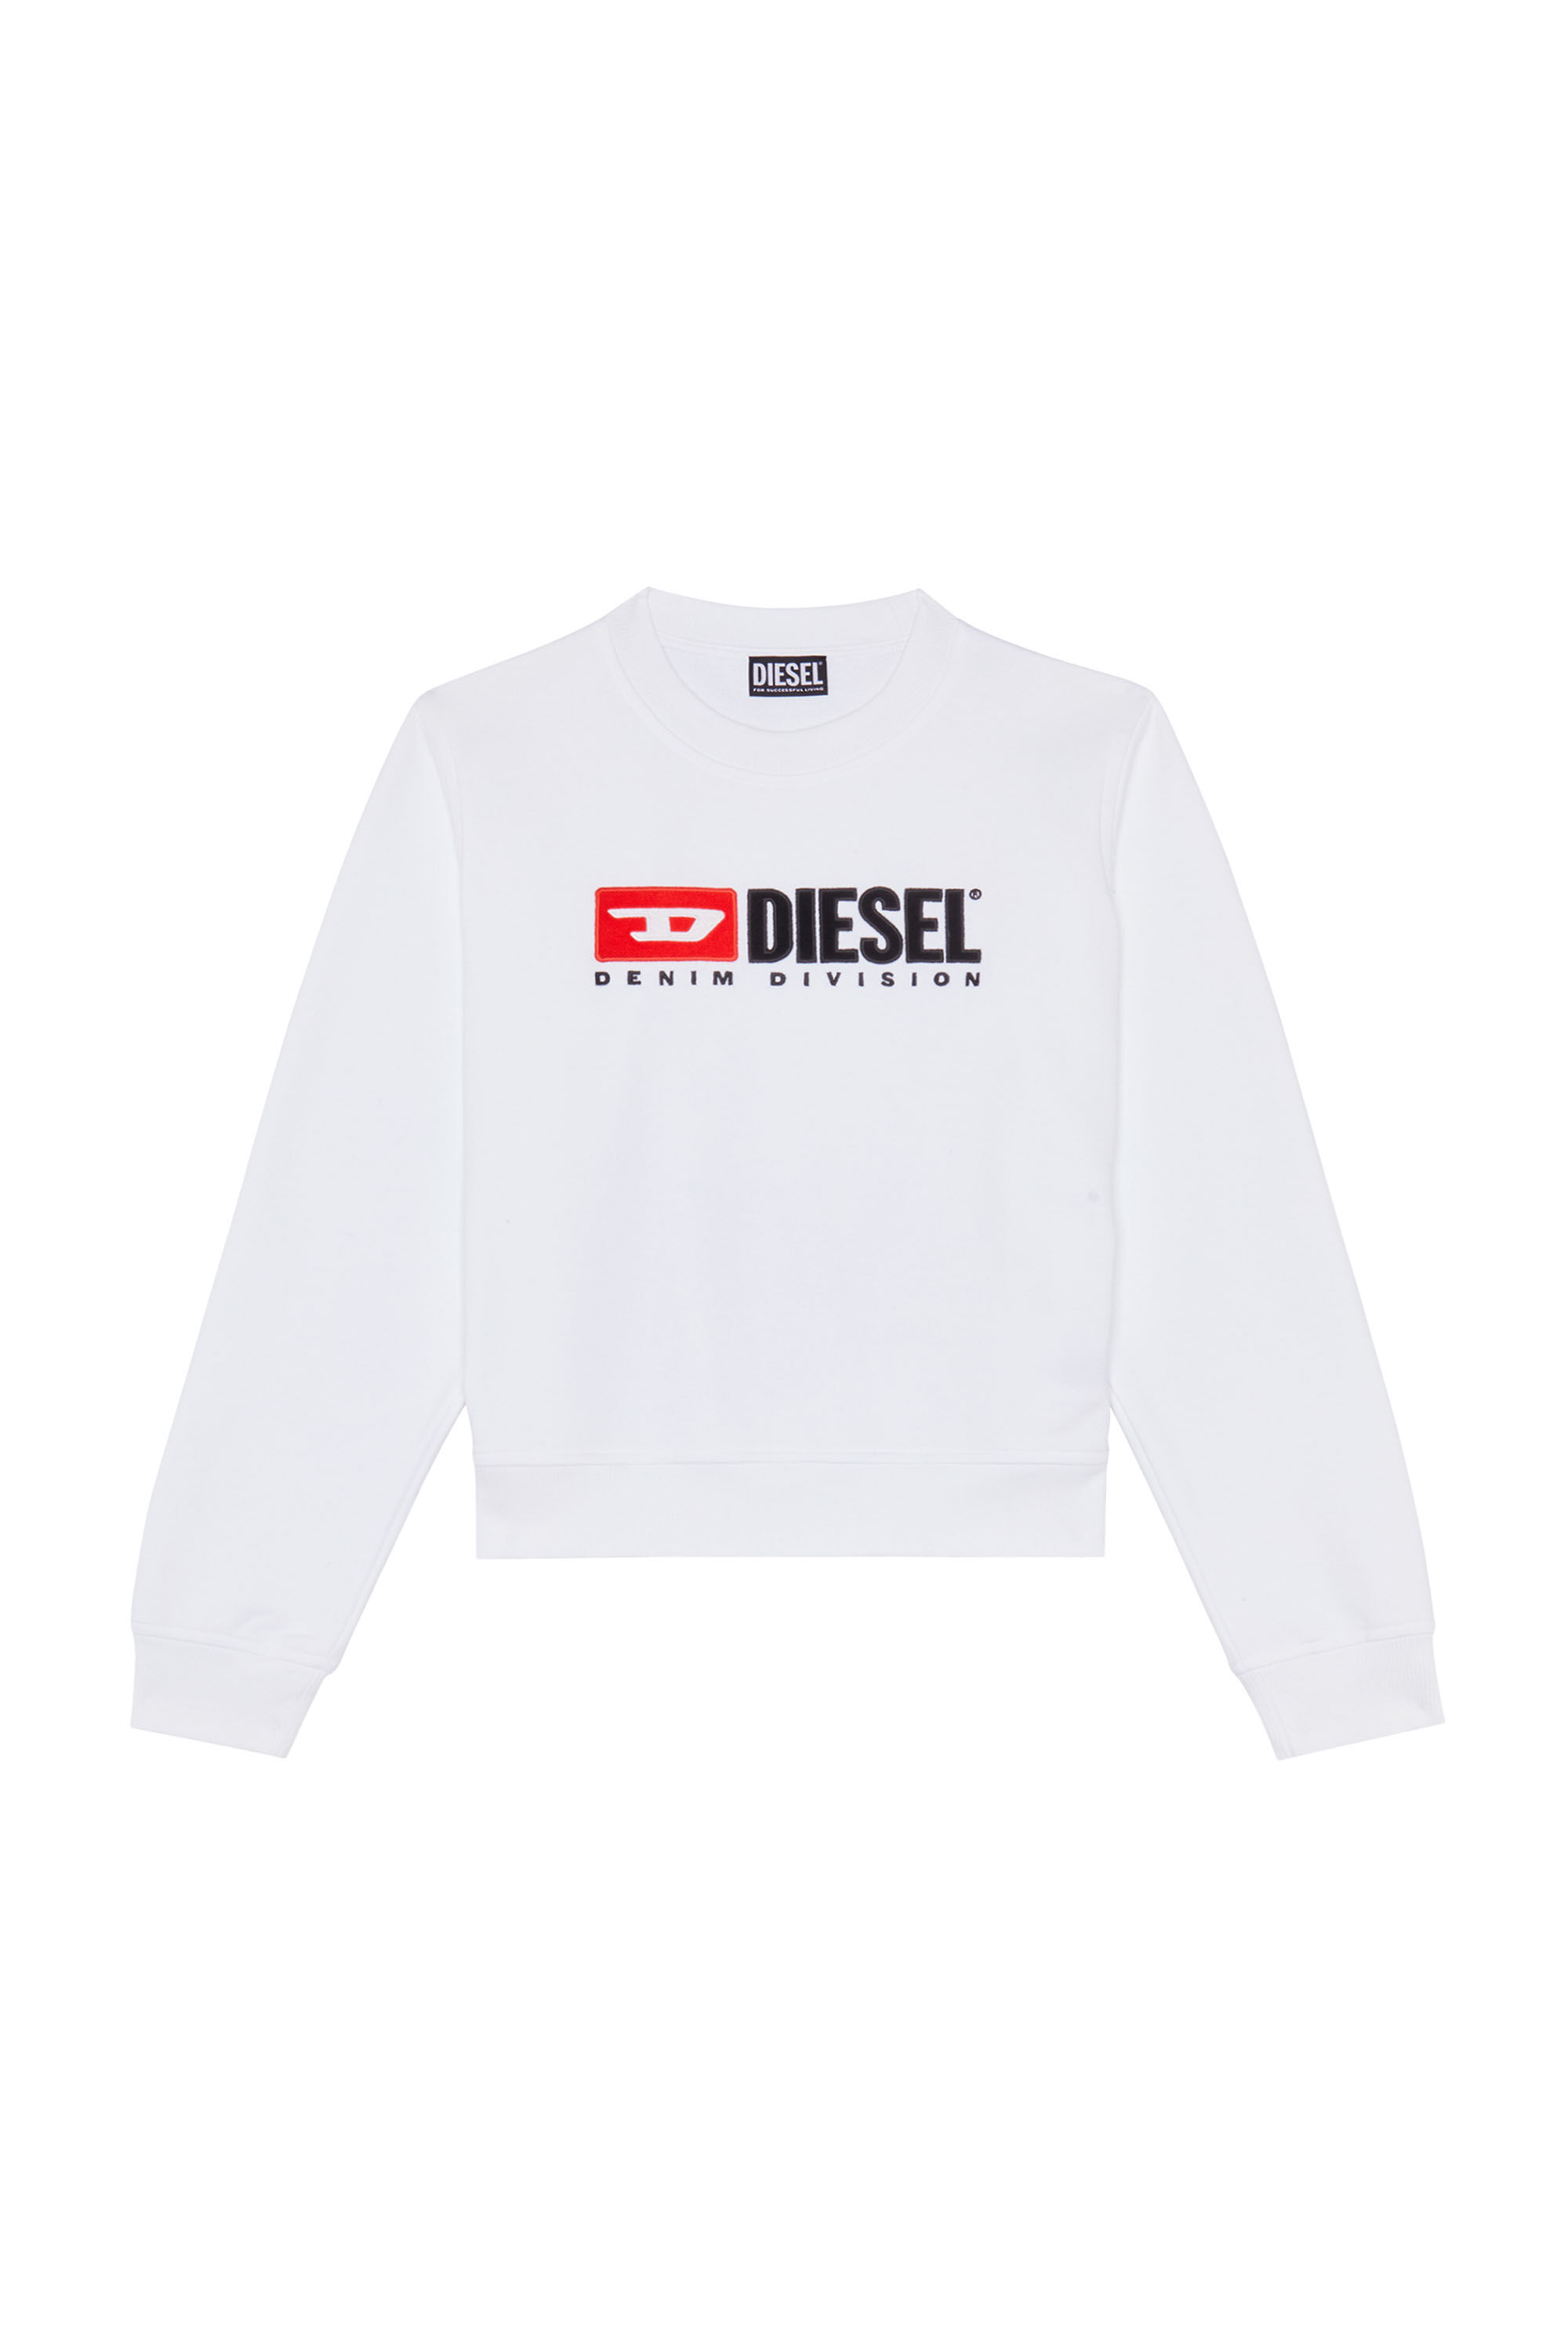 Diesel - F-REGGY-DIV, White - Image 2